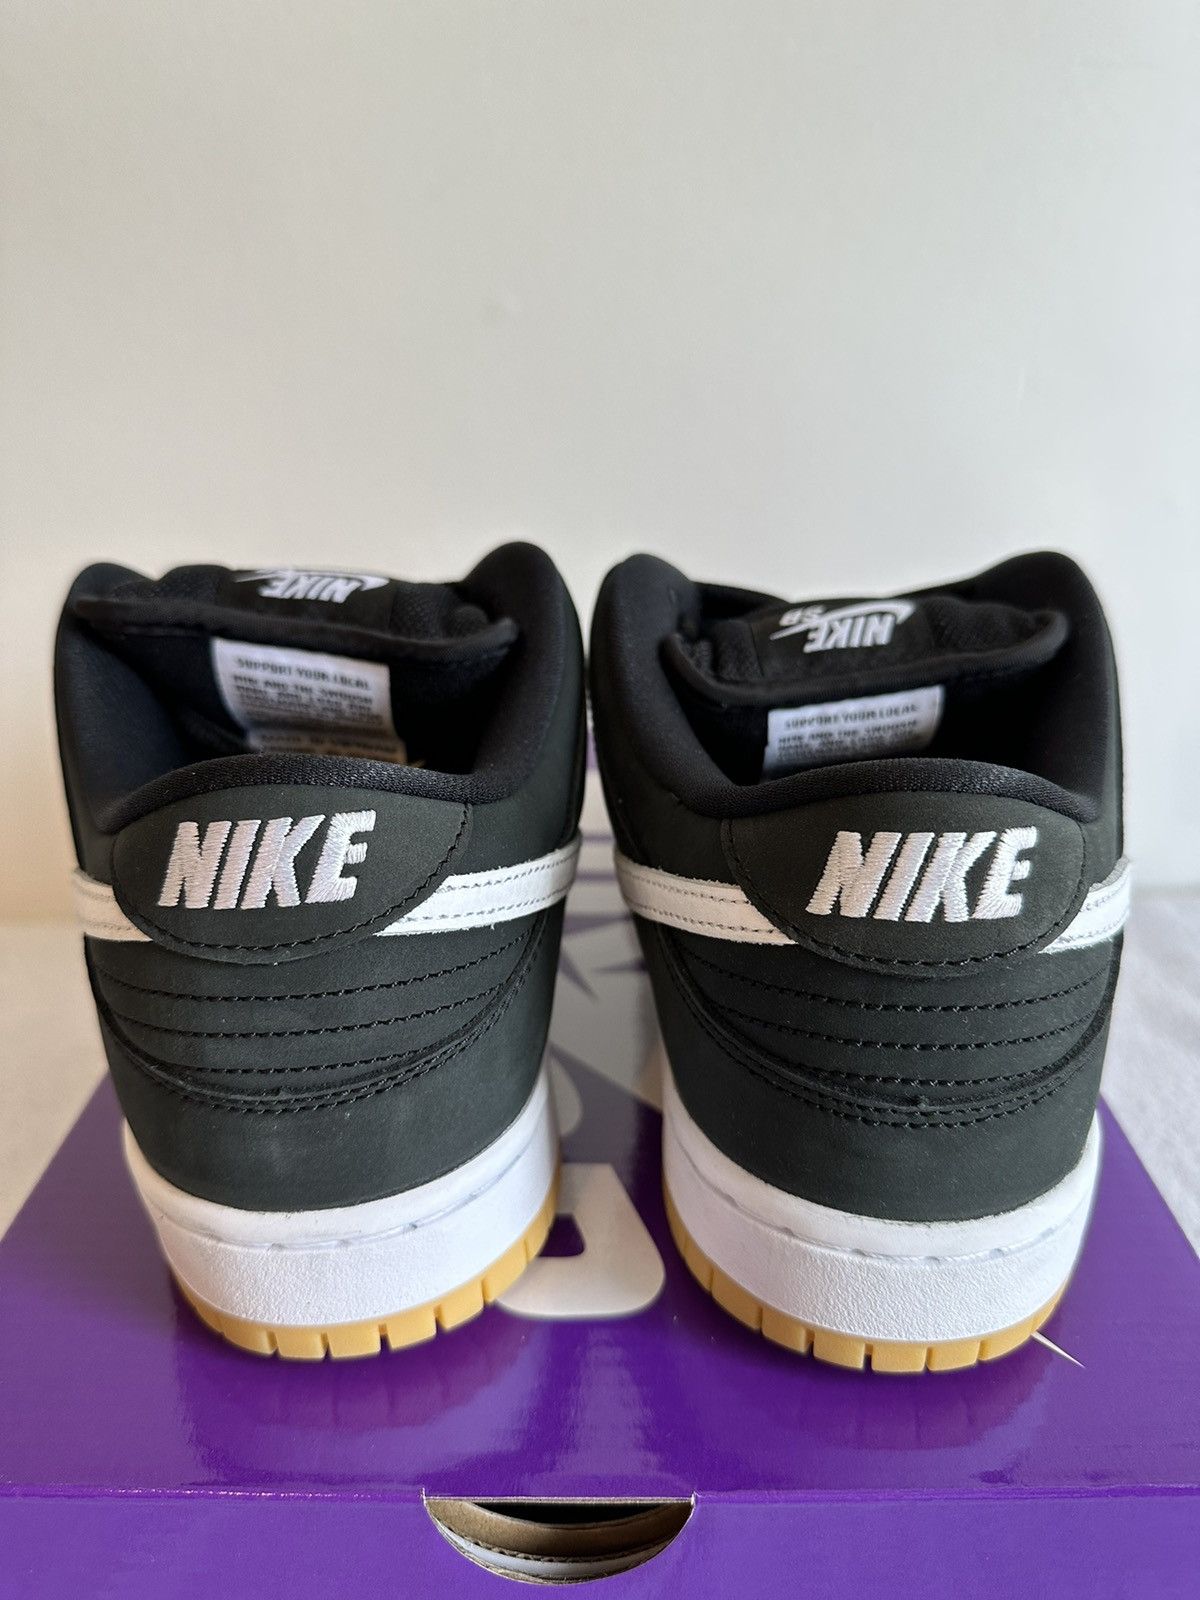 Nike Nike SB Dunk Low Pro Black Gum Size 9.5 Size US 9.5 / EU 42-43 - 8 Thumbnail